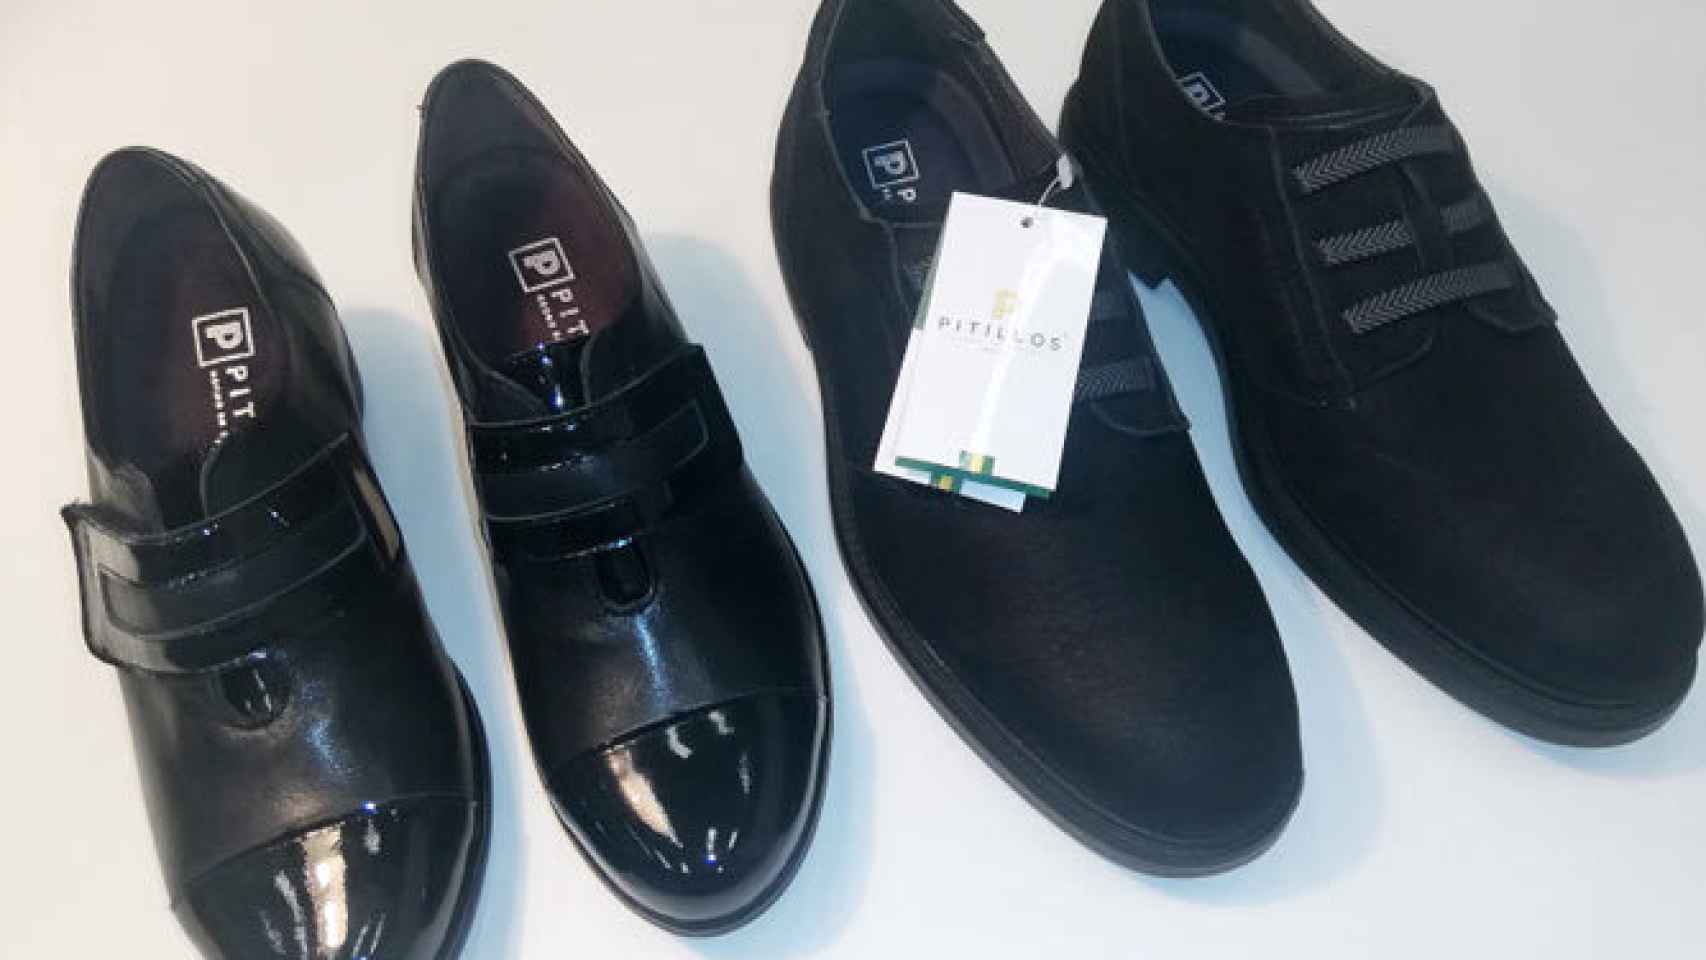 Zapato 'inteligente' de Pitillos, desarrollado dentro del proyecto europeo 'Maturolife'.